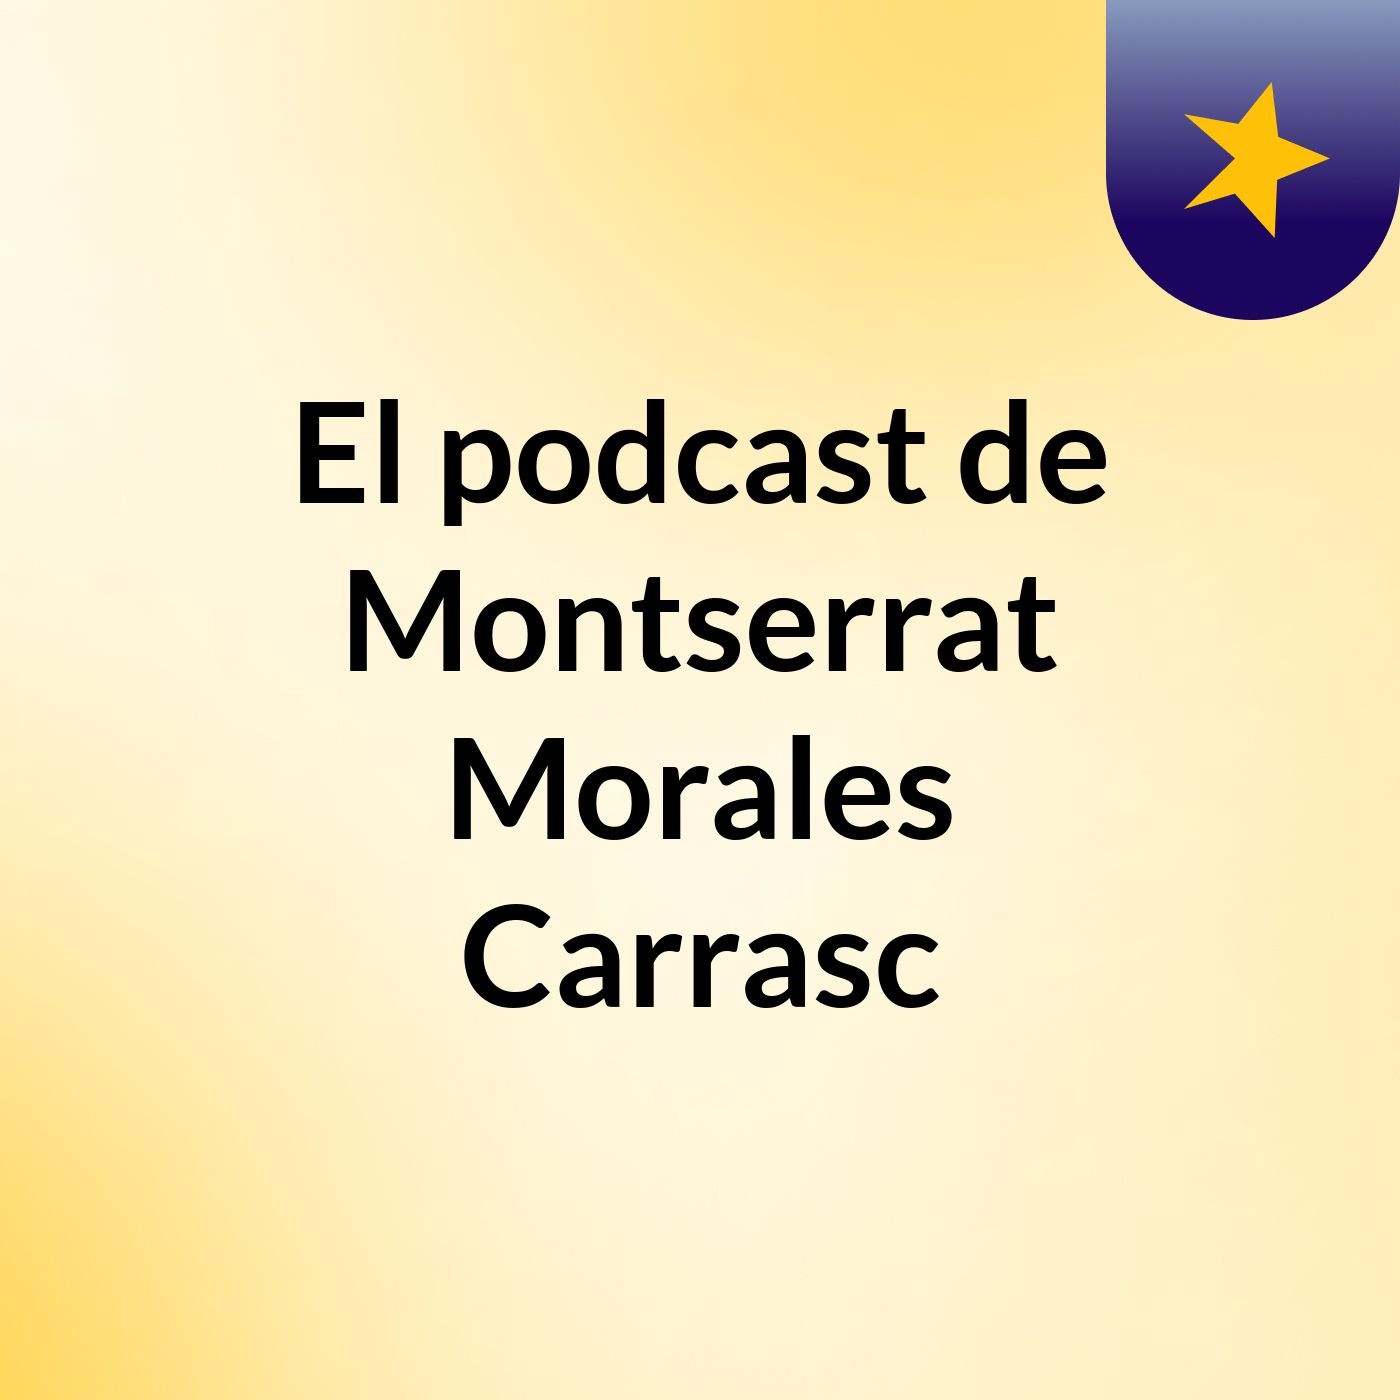 El podcast de Montserrat Morales Carrasc